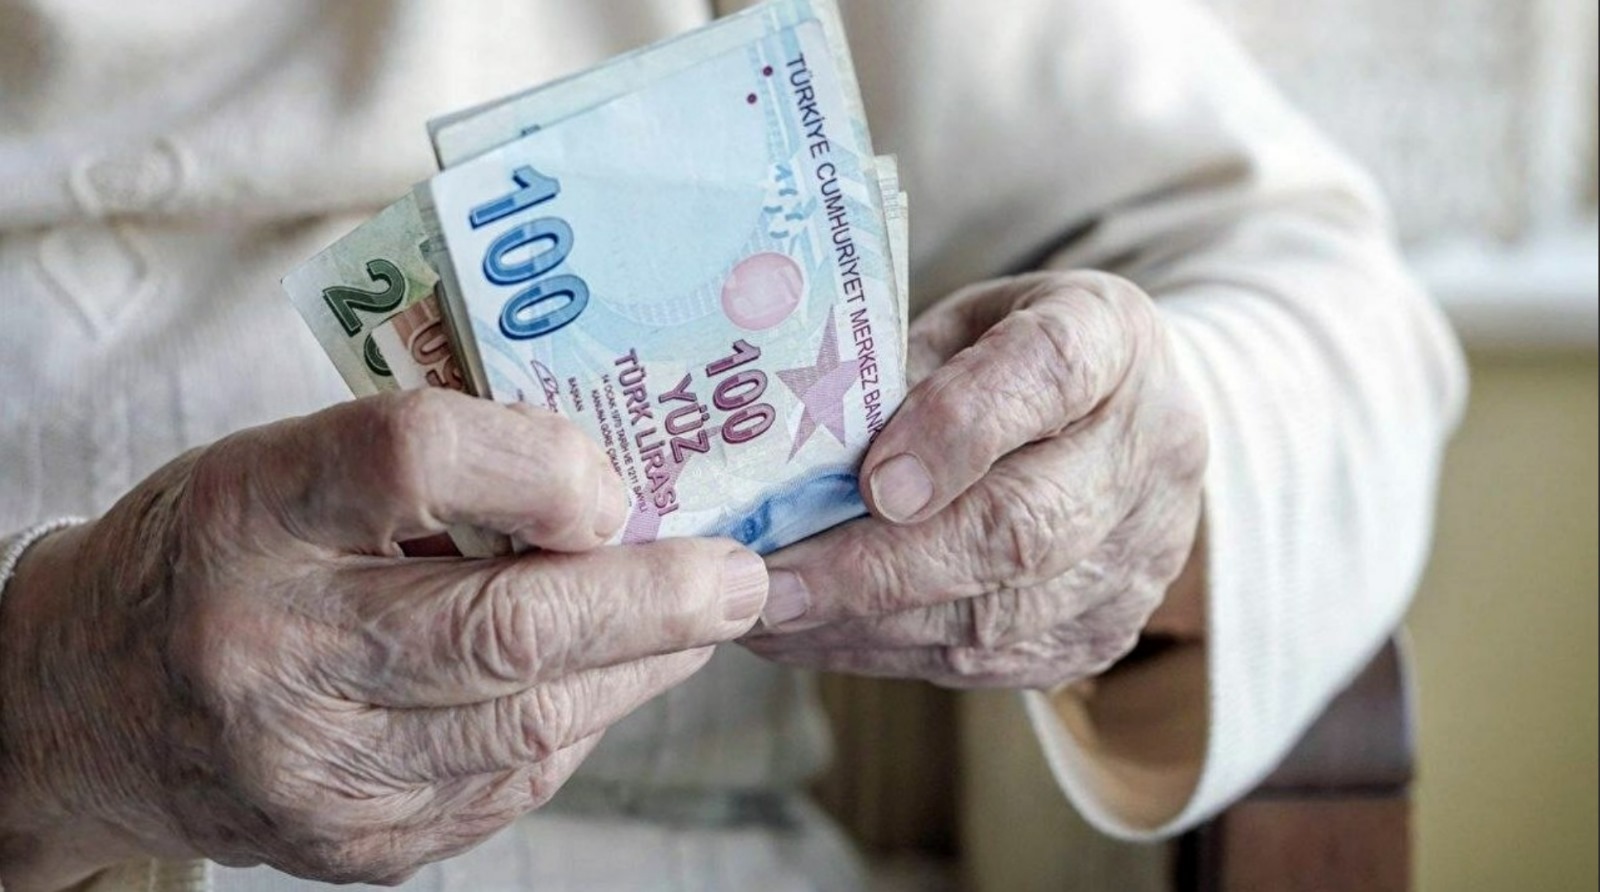 En düşük emekli maaşı 10 bin lirayı geçecek